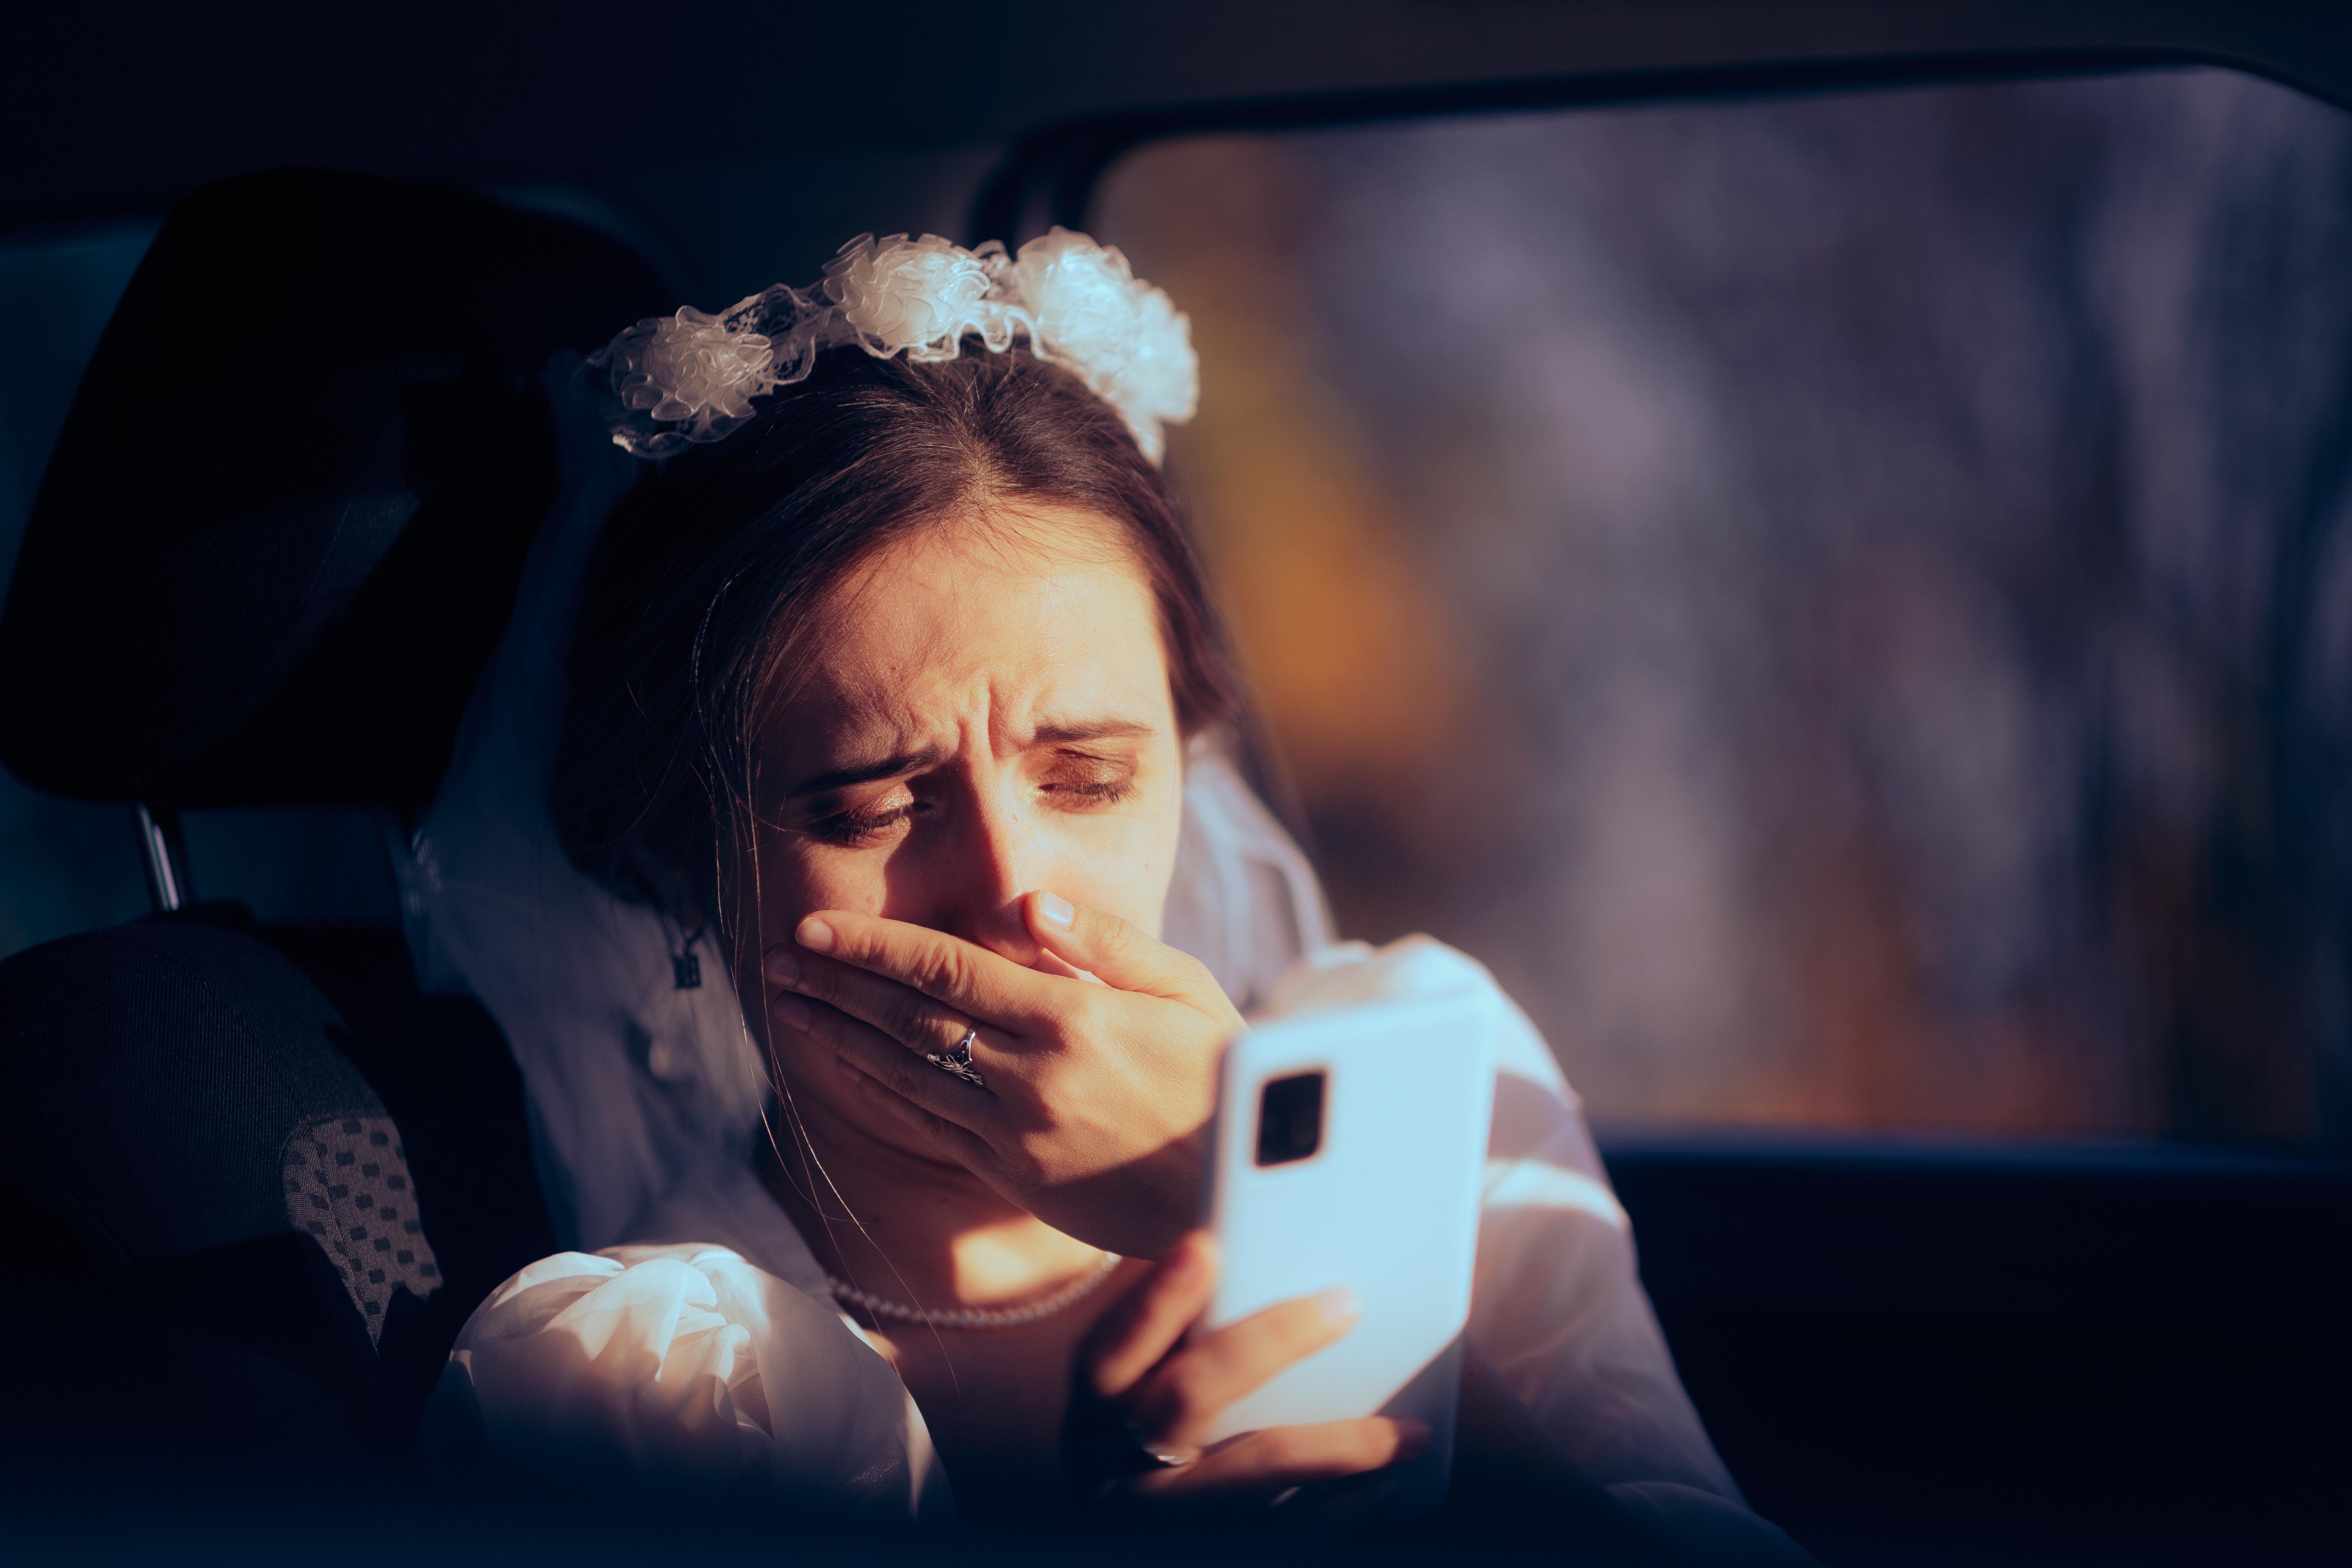 Une mariée en pleurs qui regarde fixement son smartphone | Source : Shutterstock